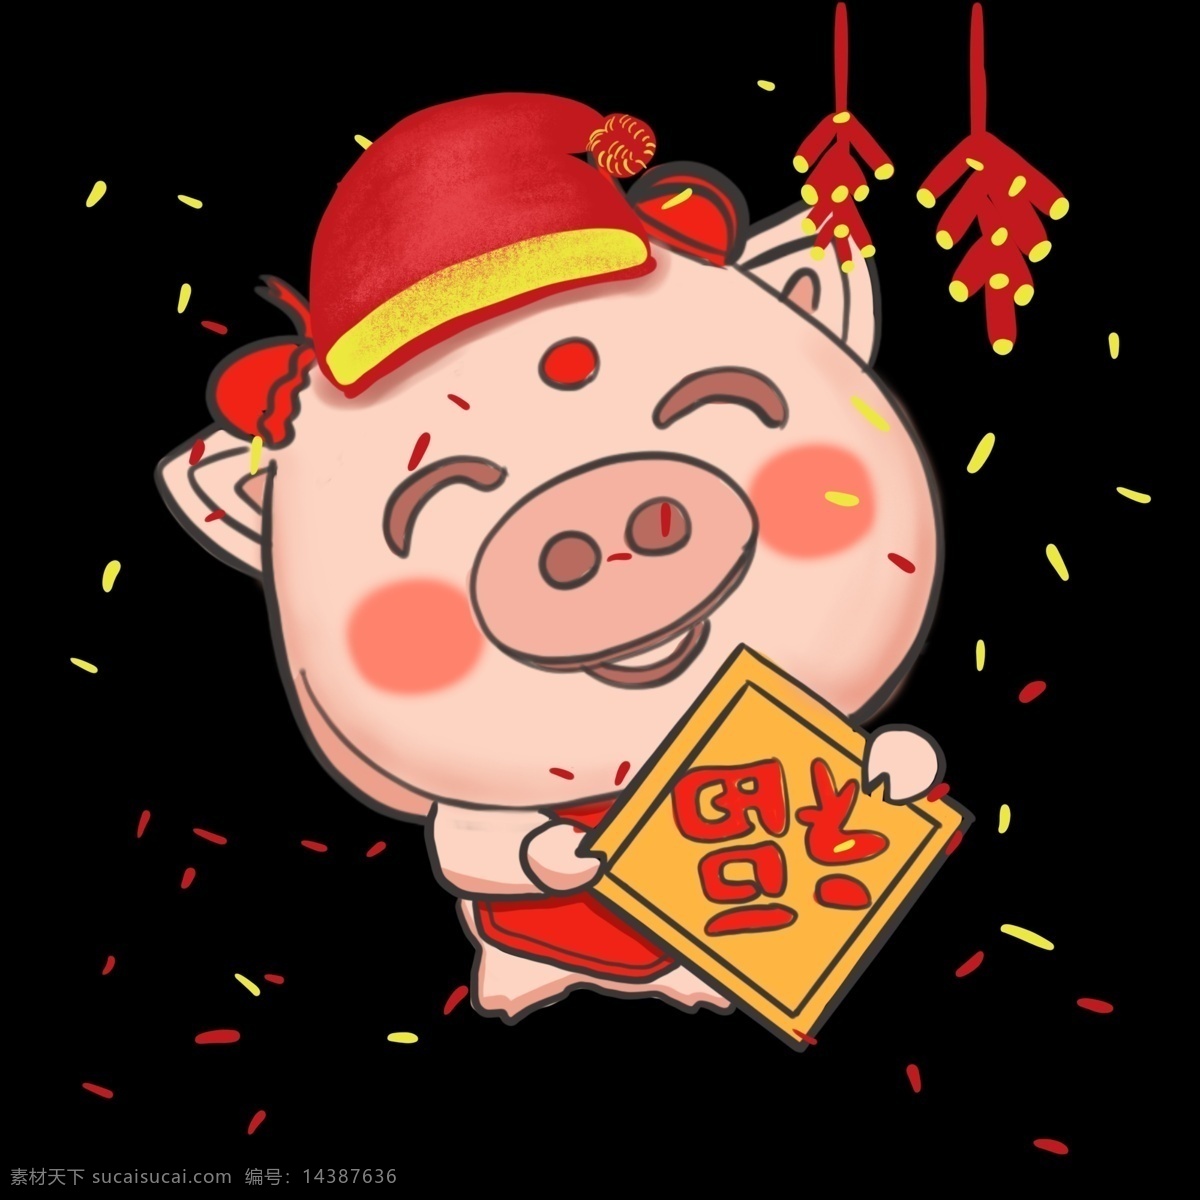 猪年 戴帽子 猪 红色 系列 手绘 插画 宝宝 戴帽子的猪 红色系列 猪宝宝 金猪报福 福到了 中国结 可爱的猪猪 灯笼